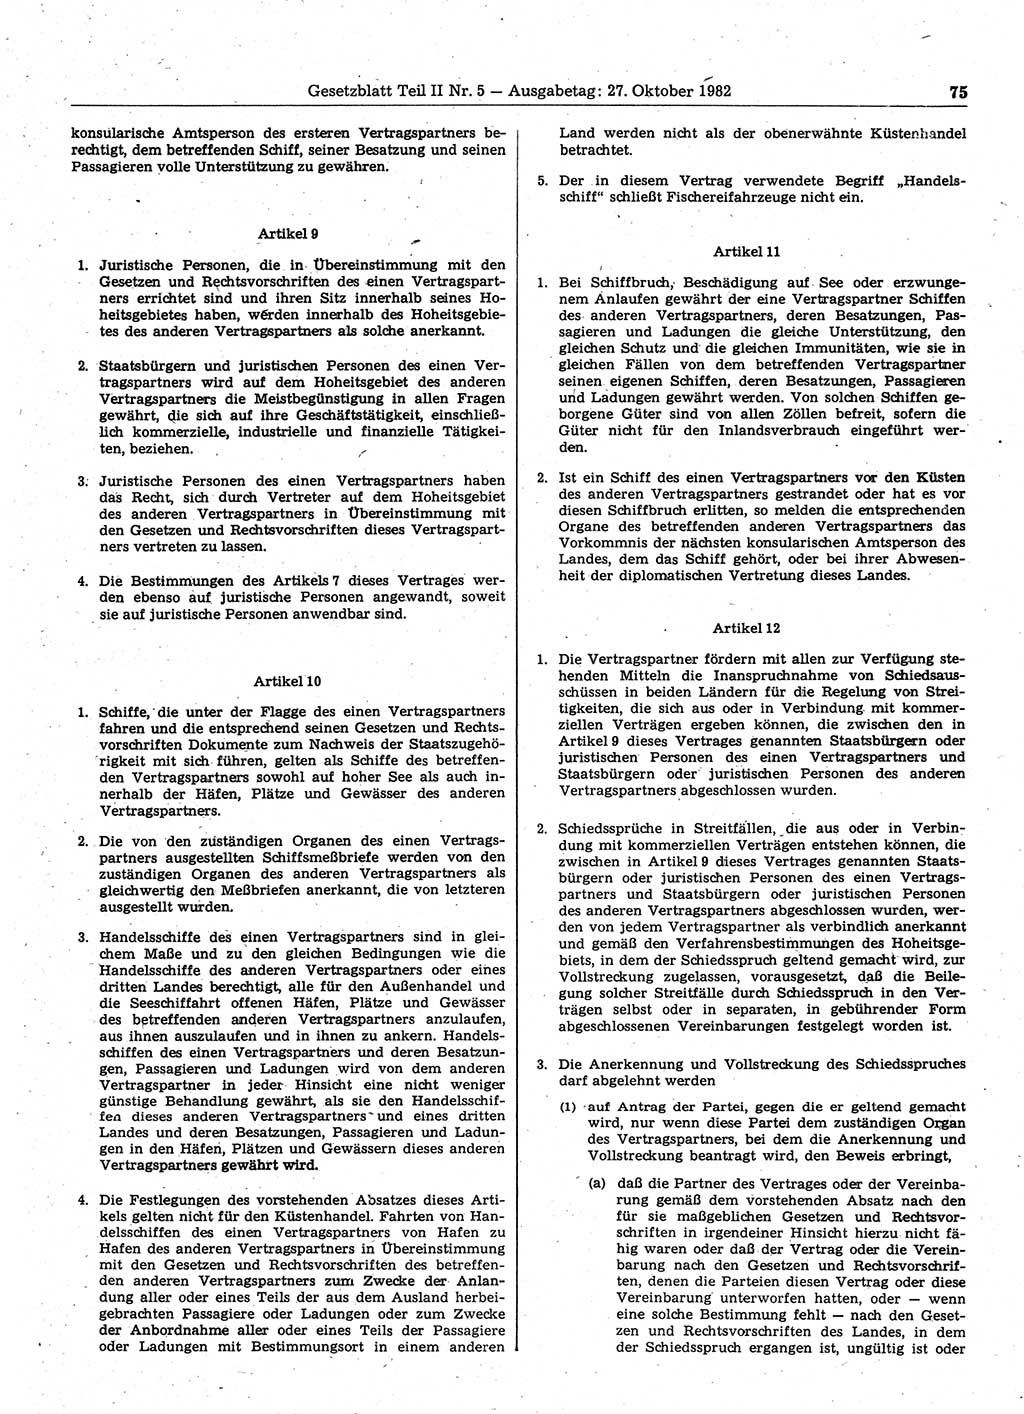 Gesetzblatt (GBl.) der Deutschen Demokratischen Republik (DDR) Teil ⅠⅠ 1982, Seite 75 (GBl. DDR ⅠⅠ 1982, S. 75)